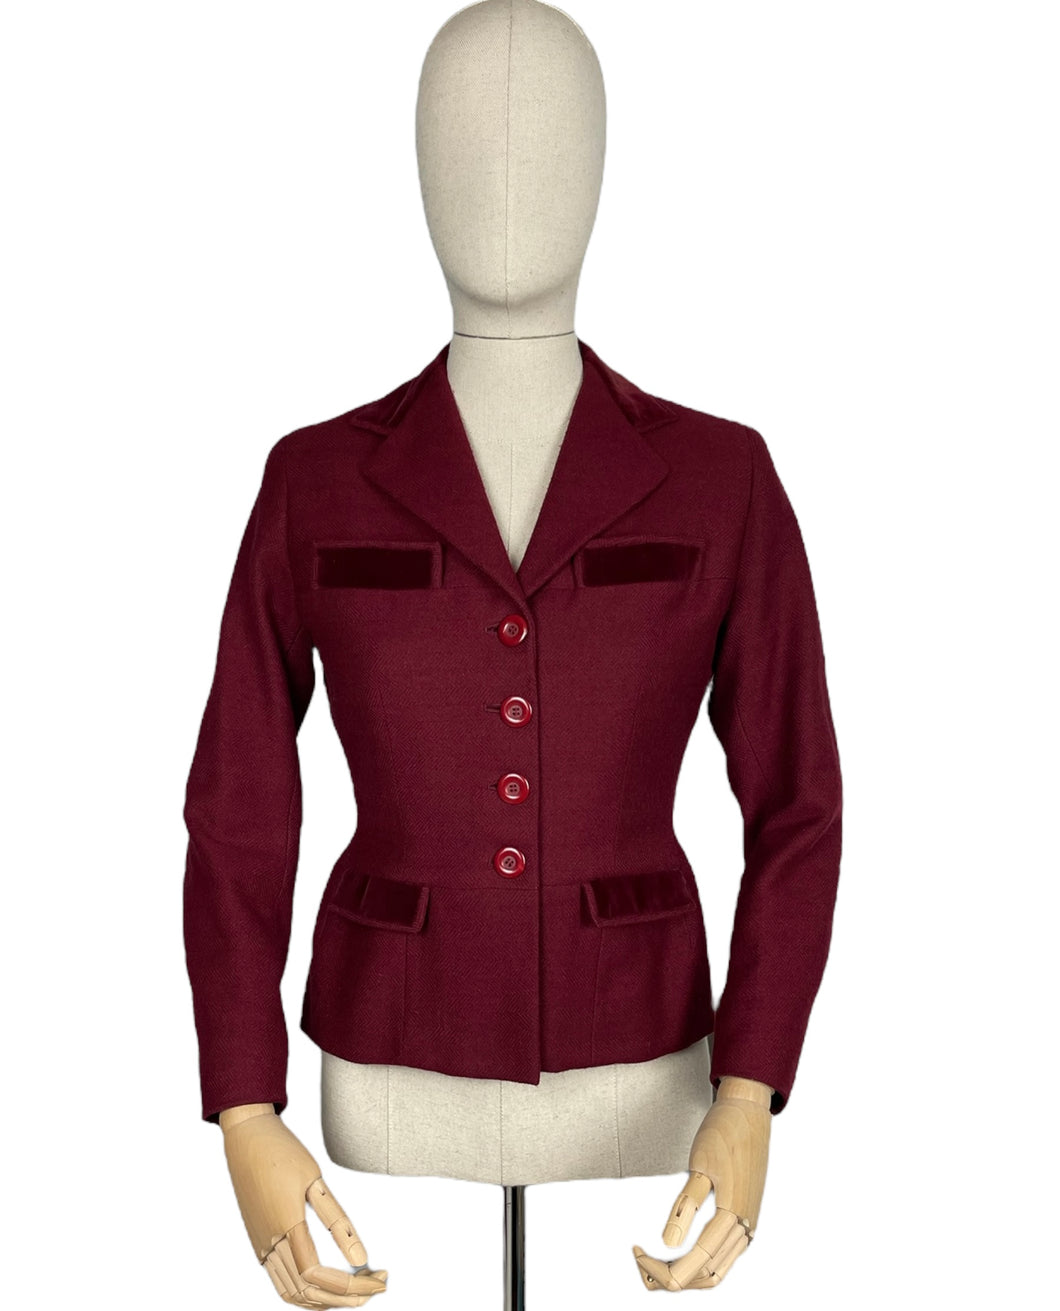 Original 1940's Burgundy Herringbone Wool Jacket with Rich Velvet Trim - Bust 34 35